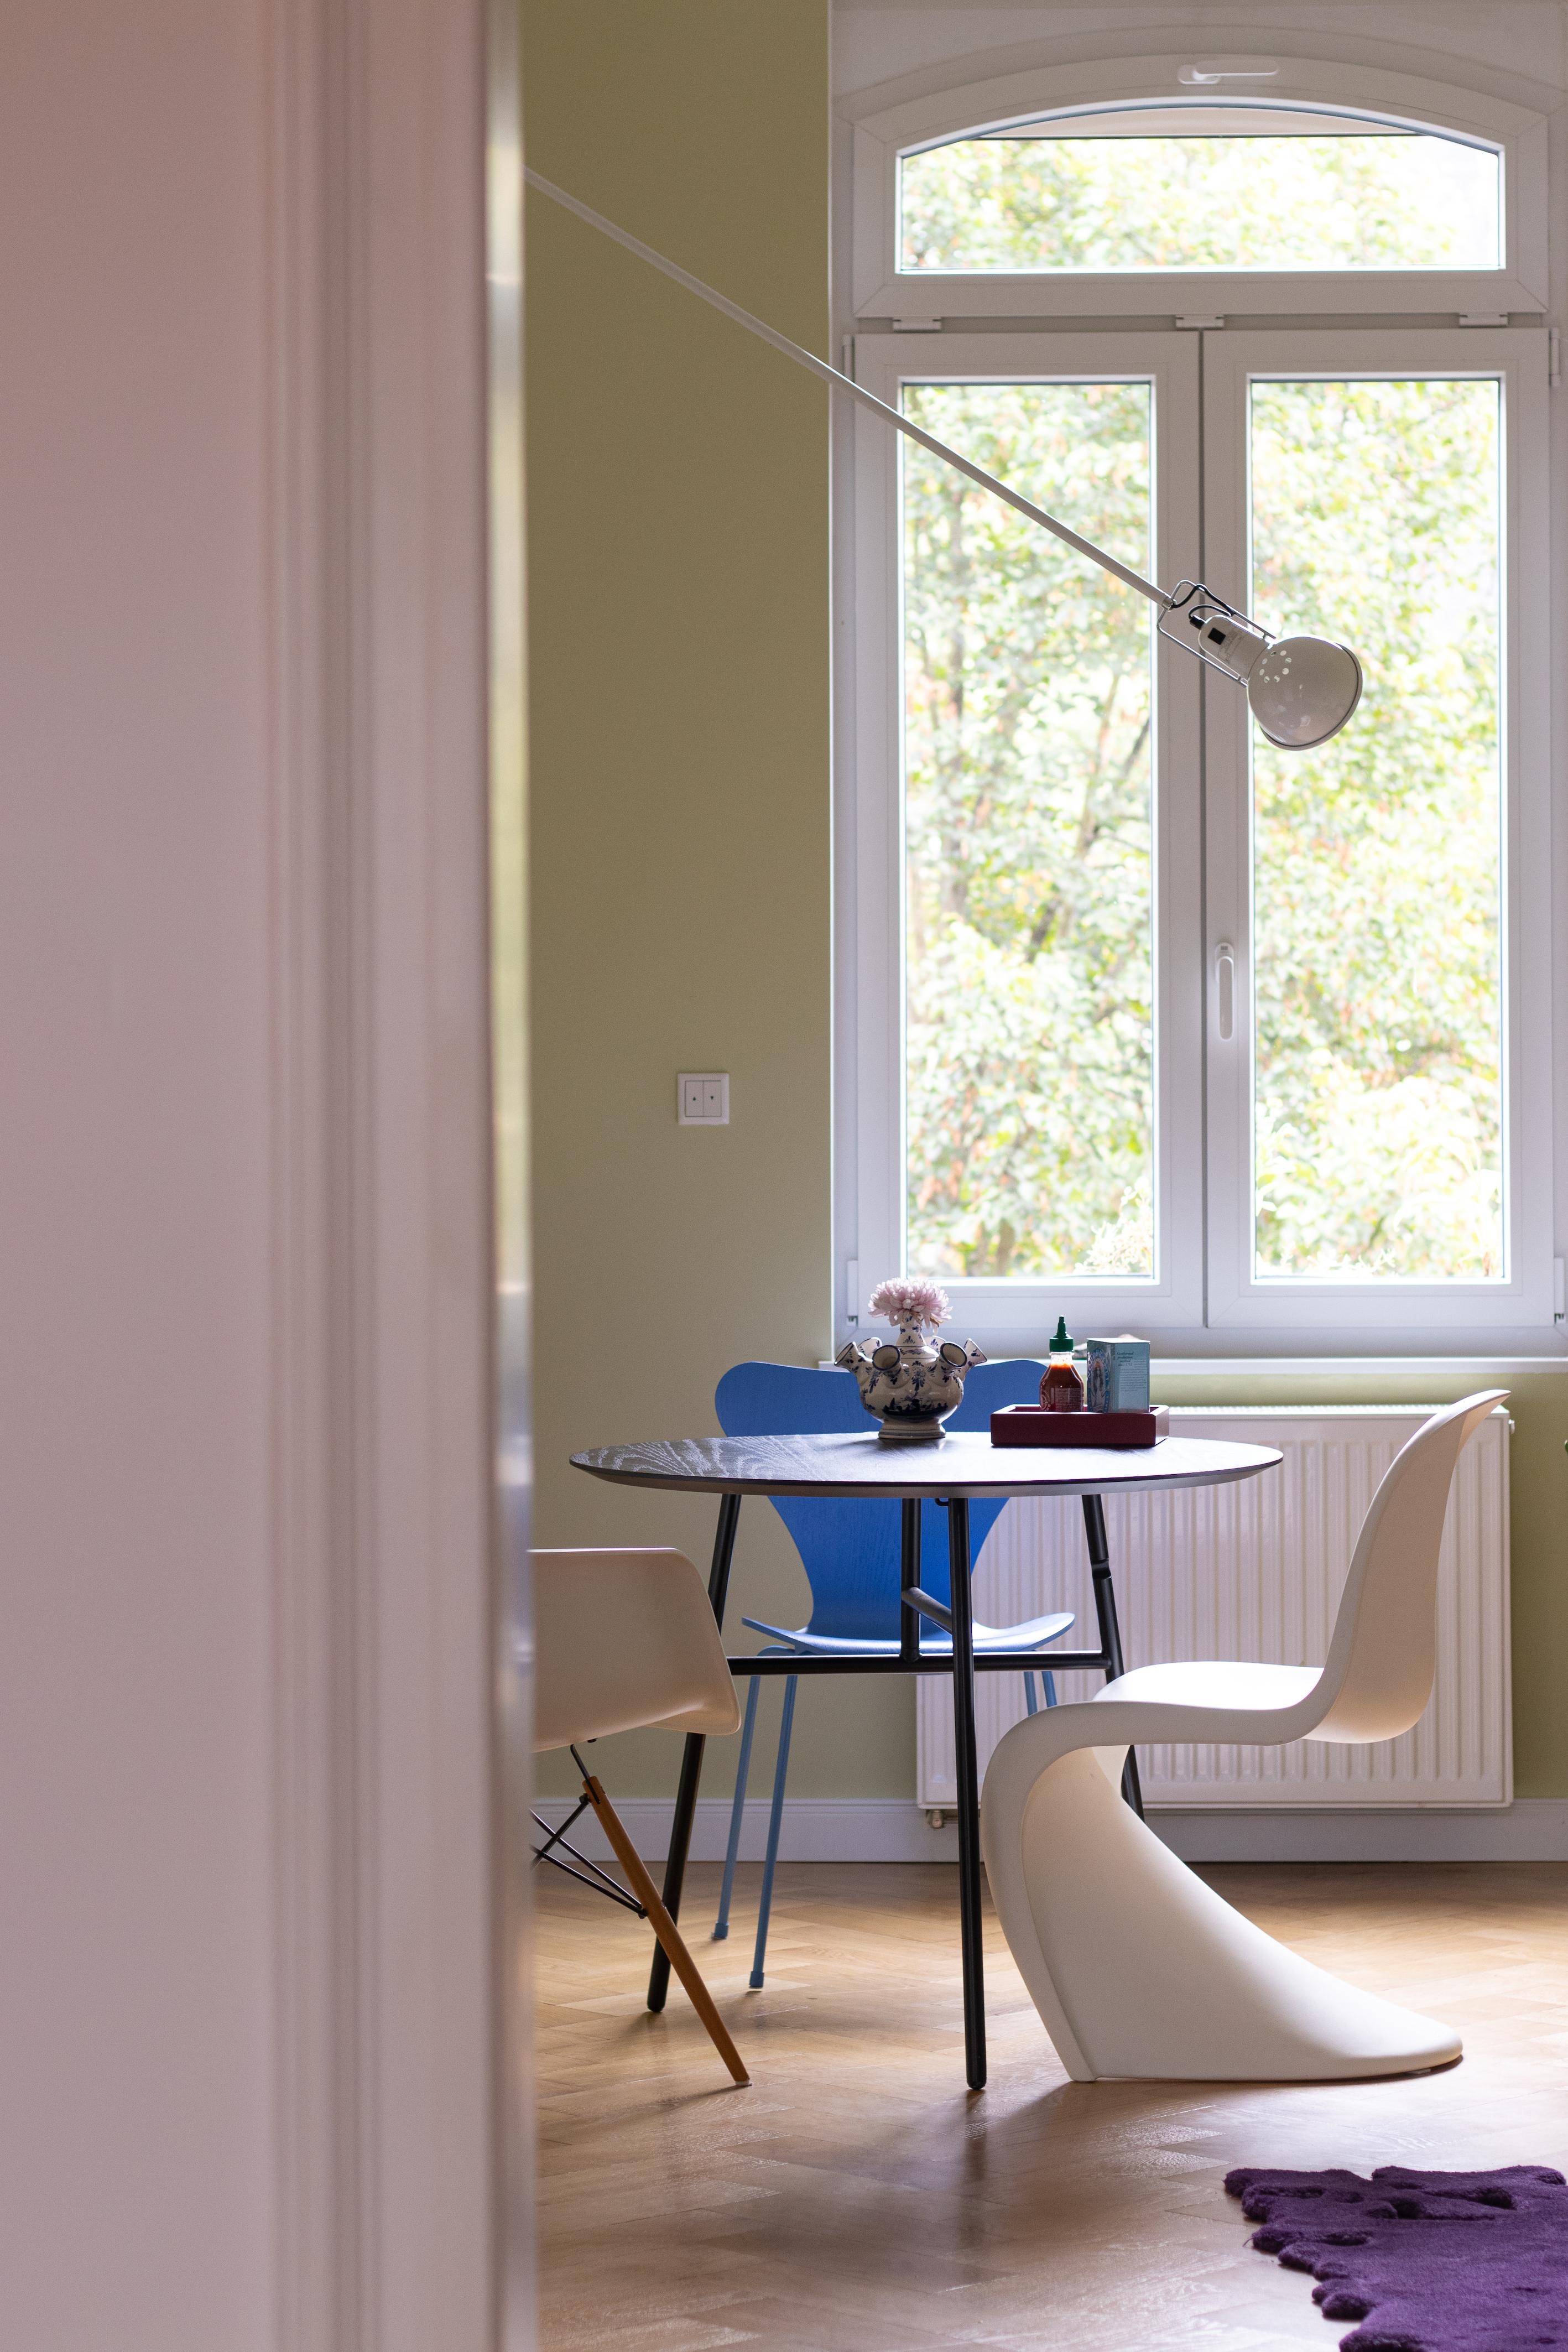 #Herbst #Esstisch #Stuhl #Grün #Farbenfroh #Blau #Grün #Couchliebt #Couchstyle #Altbau #Fenster